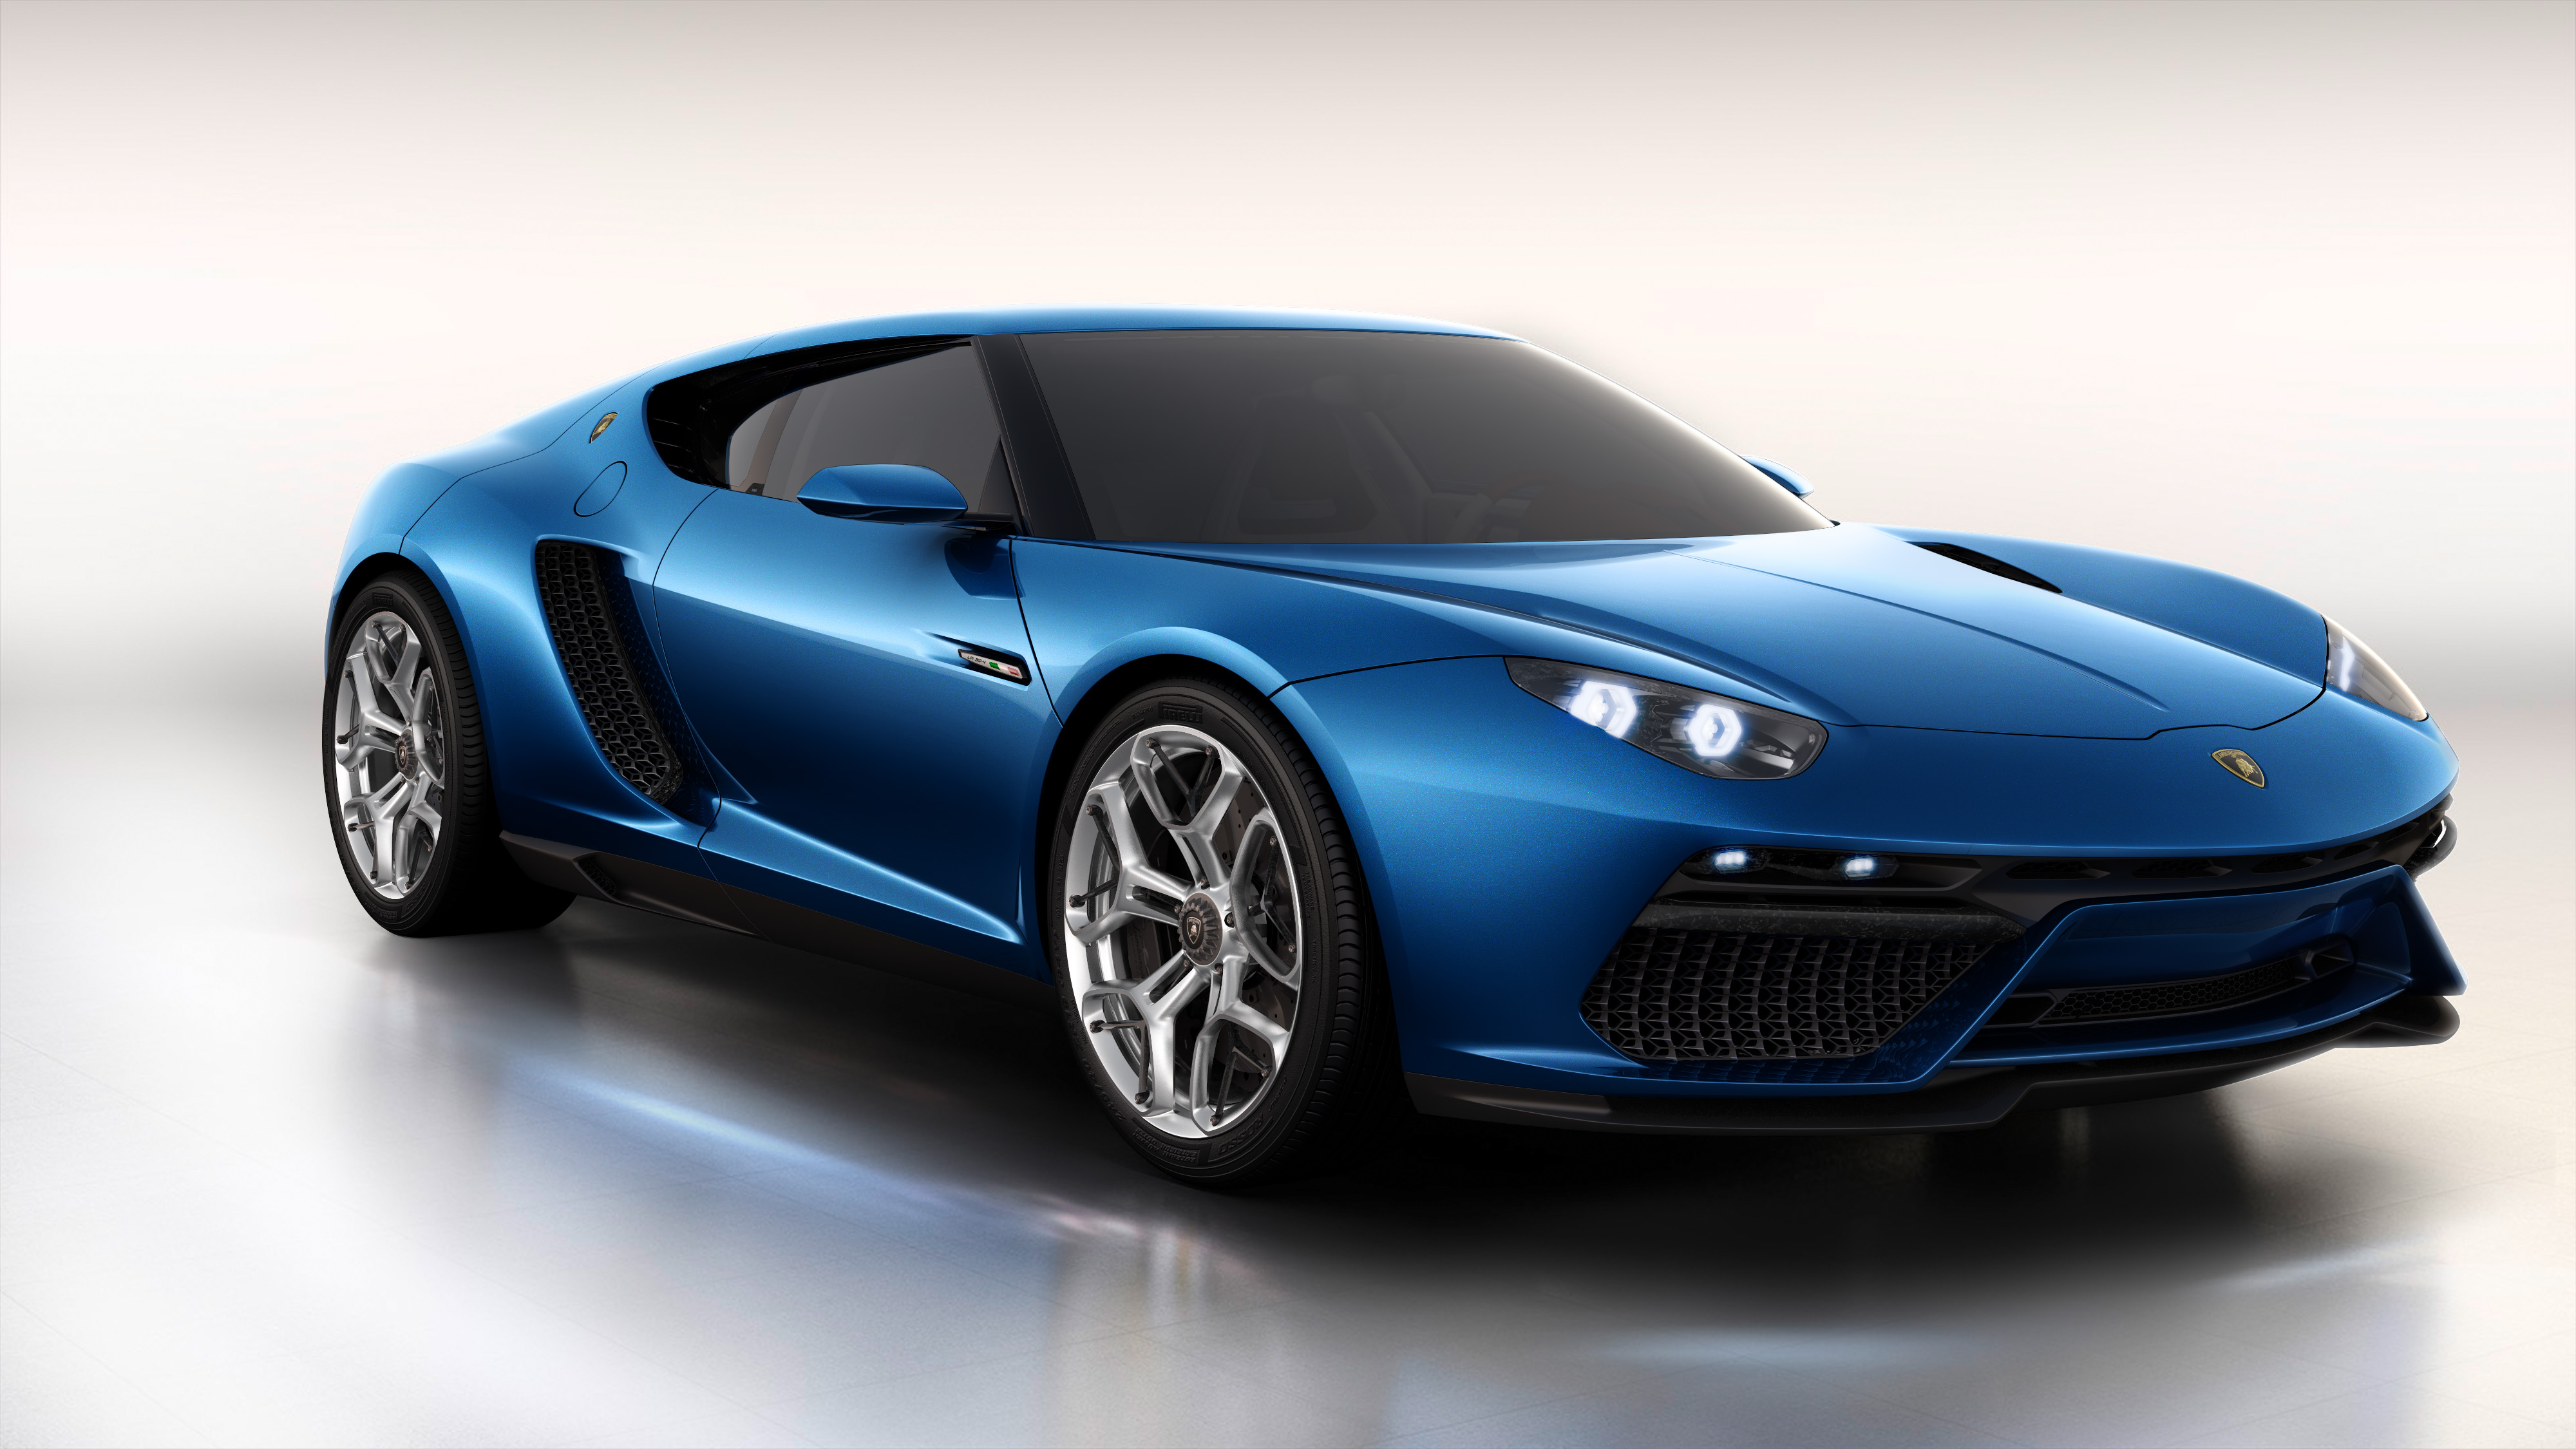 Lamborghini Miura Concept › Autemo.com › Automotive Design ...